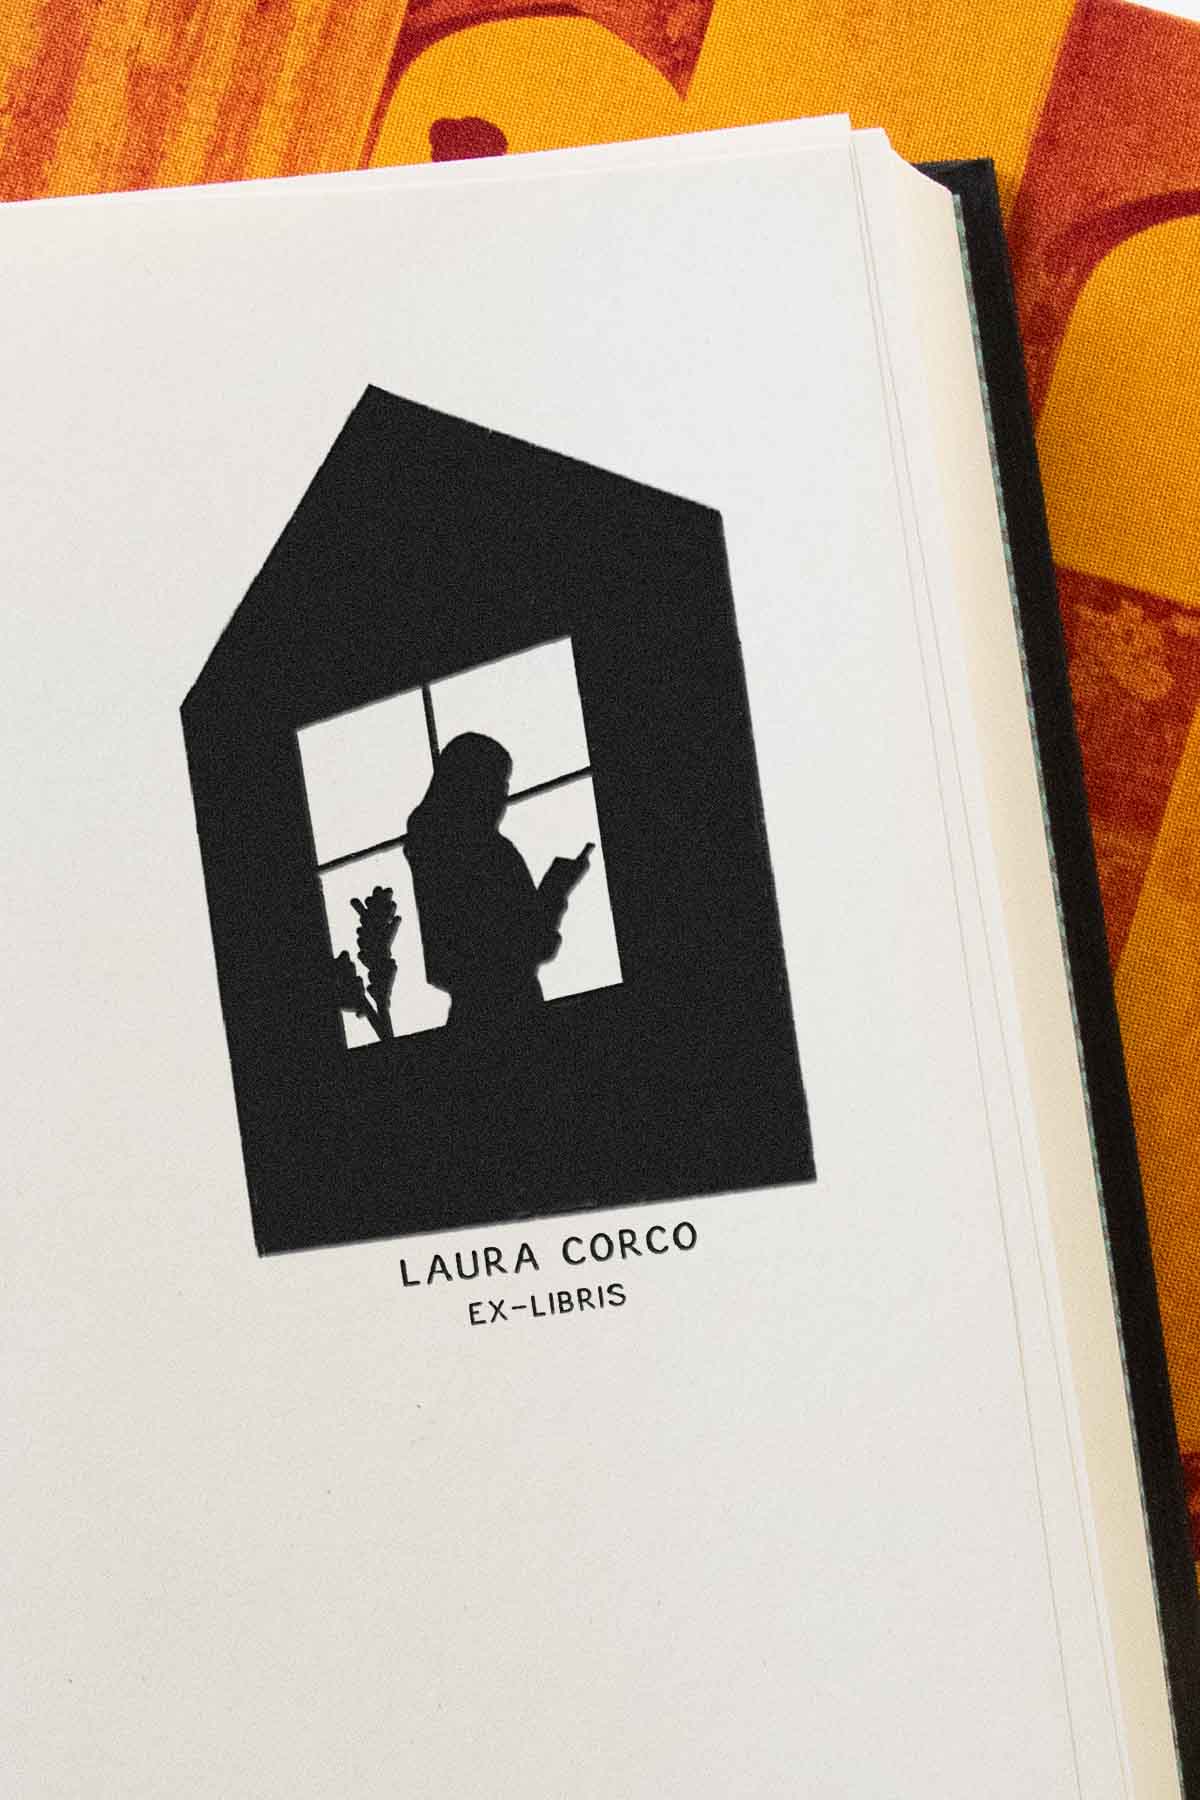 Portadilla de libro estampada con sello exlibris de una silueta de una persona leyendo un libro junto a una ventana